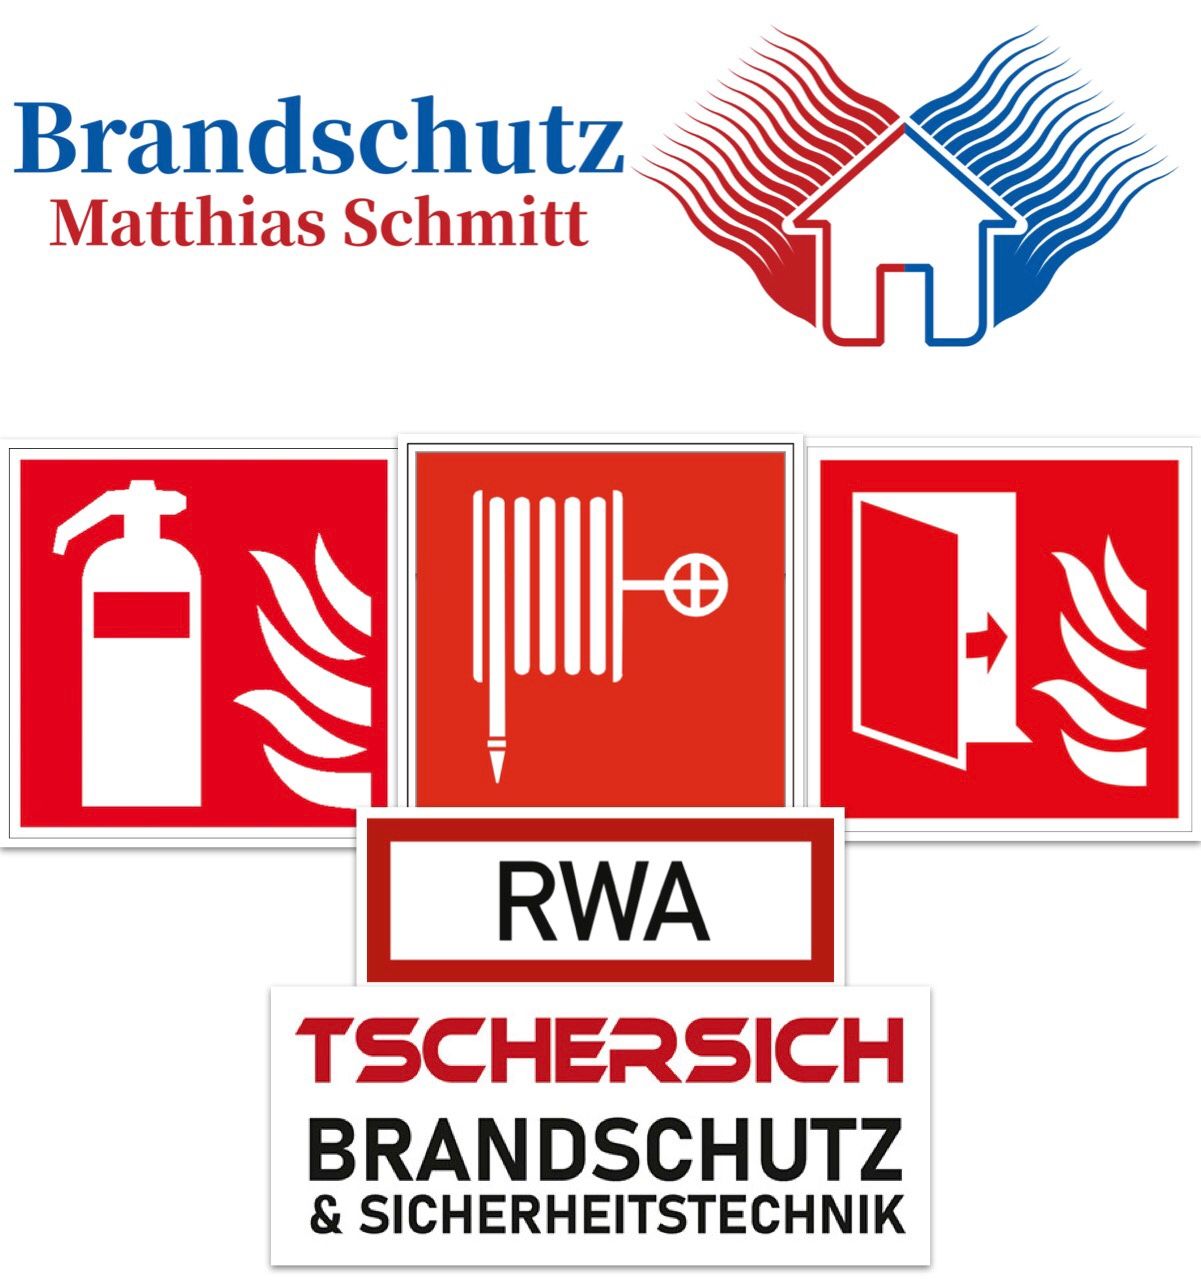 Brandschutz Matthias Schmitt & Tschersich Brandschutz & Sicherheitstechnik